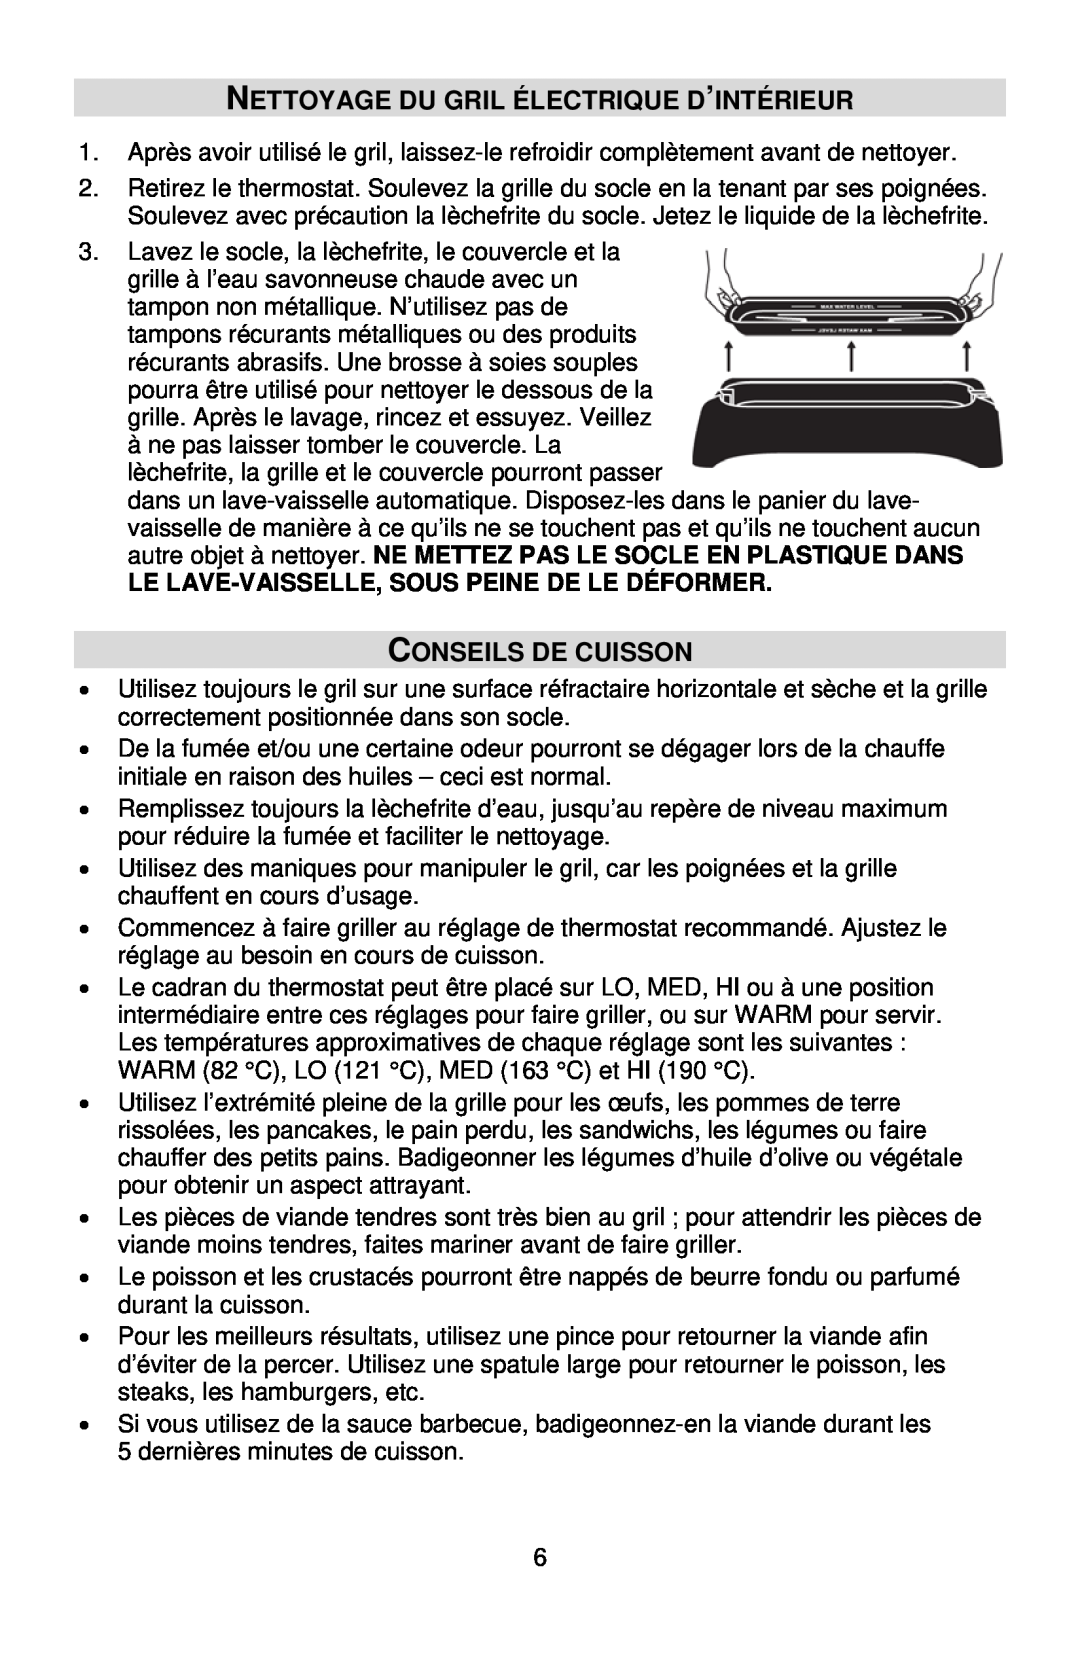 West Bend L5556B, 6111 instruction manual Nettoyage Du Gril Électrique D’Intérieur, Conseils De Cuisson 